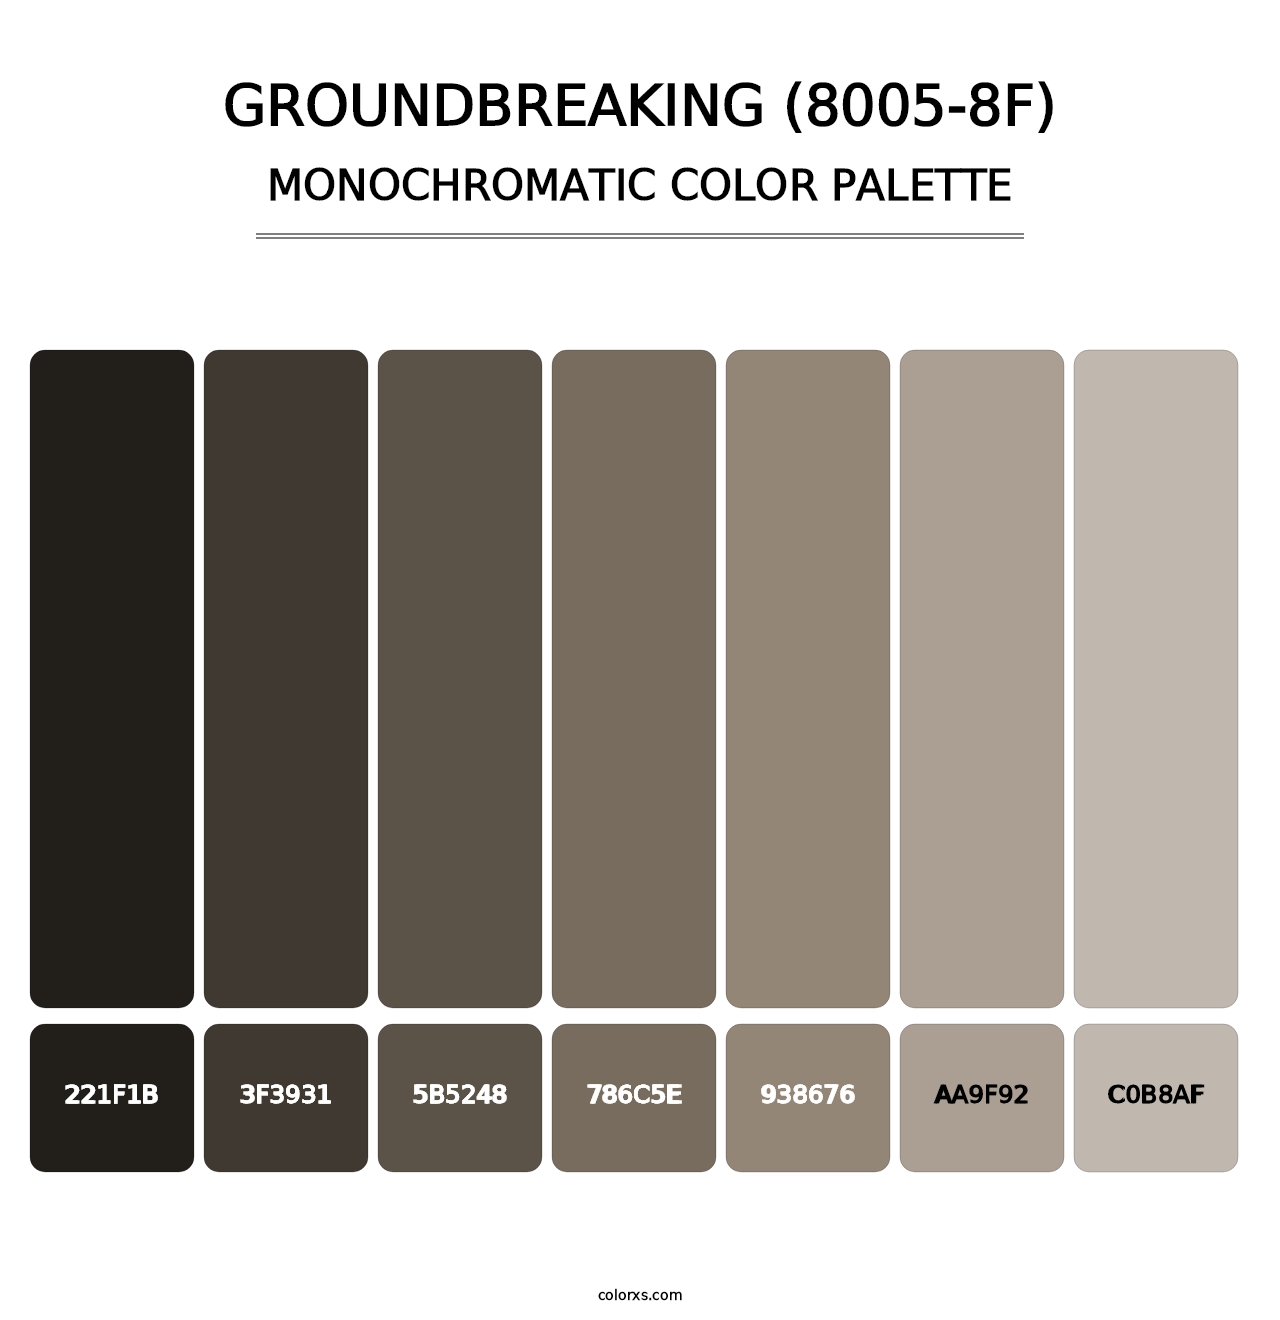 Groundbreaking (8005-8F) - Monochromatic Color Palette